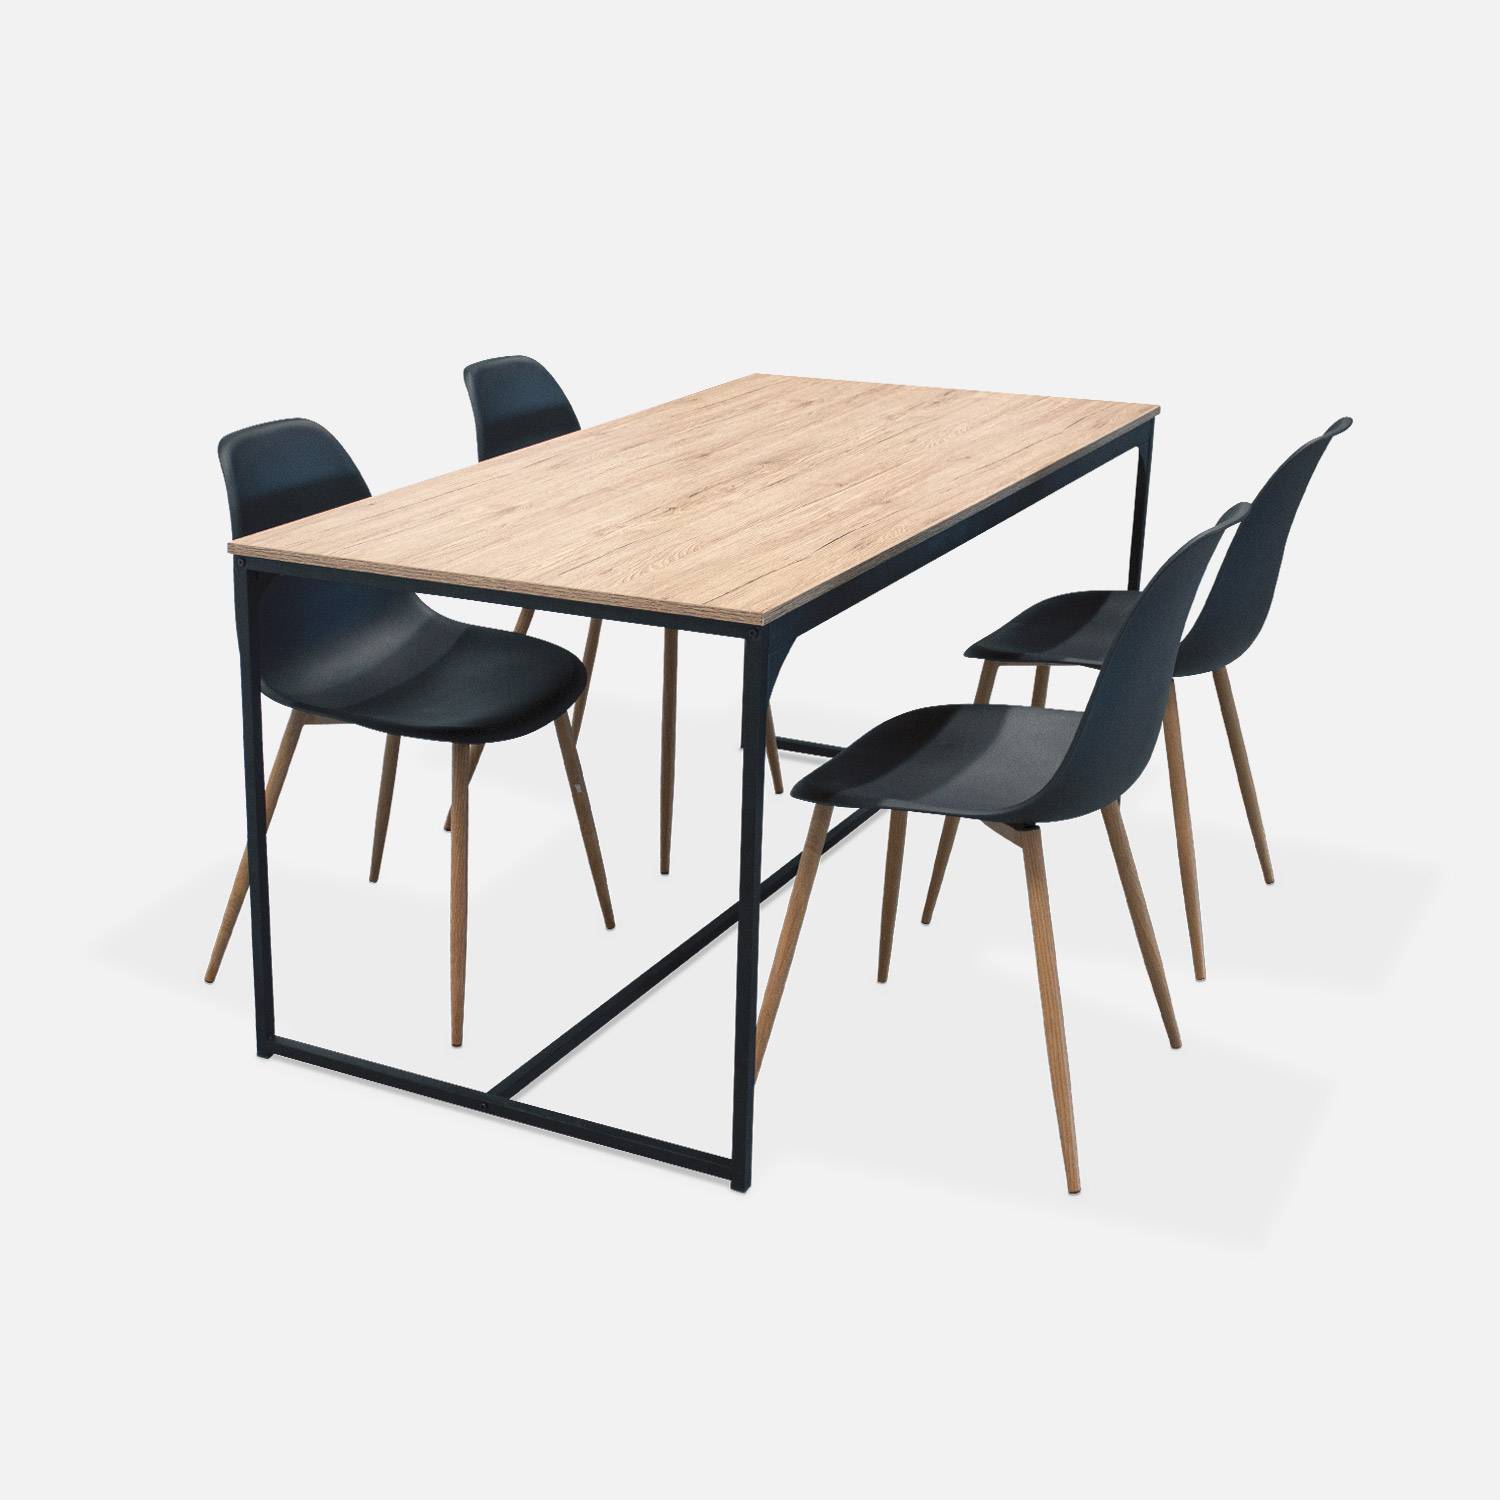 Rechthoekige eettafel zwart metaal 150cm + 4 eetkamerstoelen stoelen, houtkleurige metalen poten, zwarte zitting Photo2